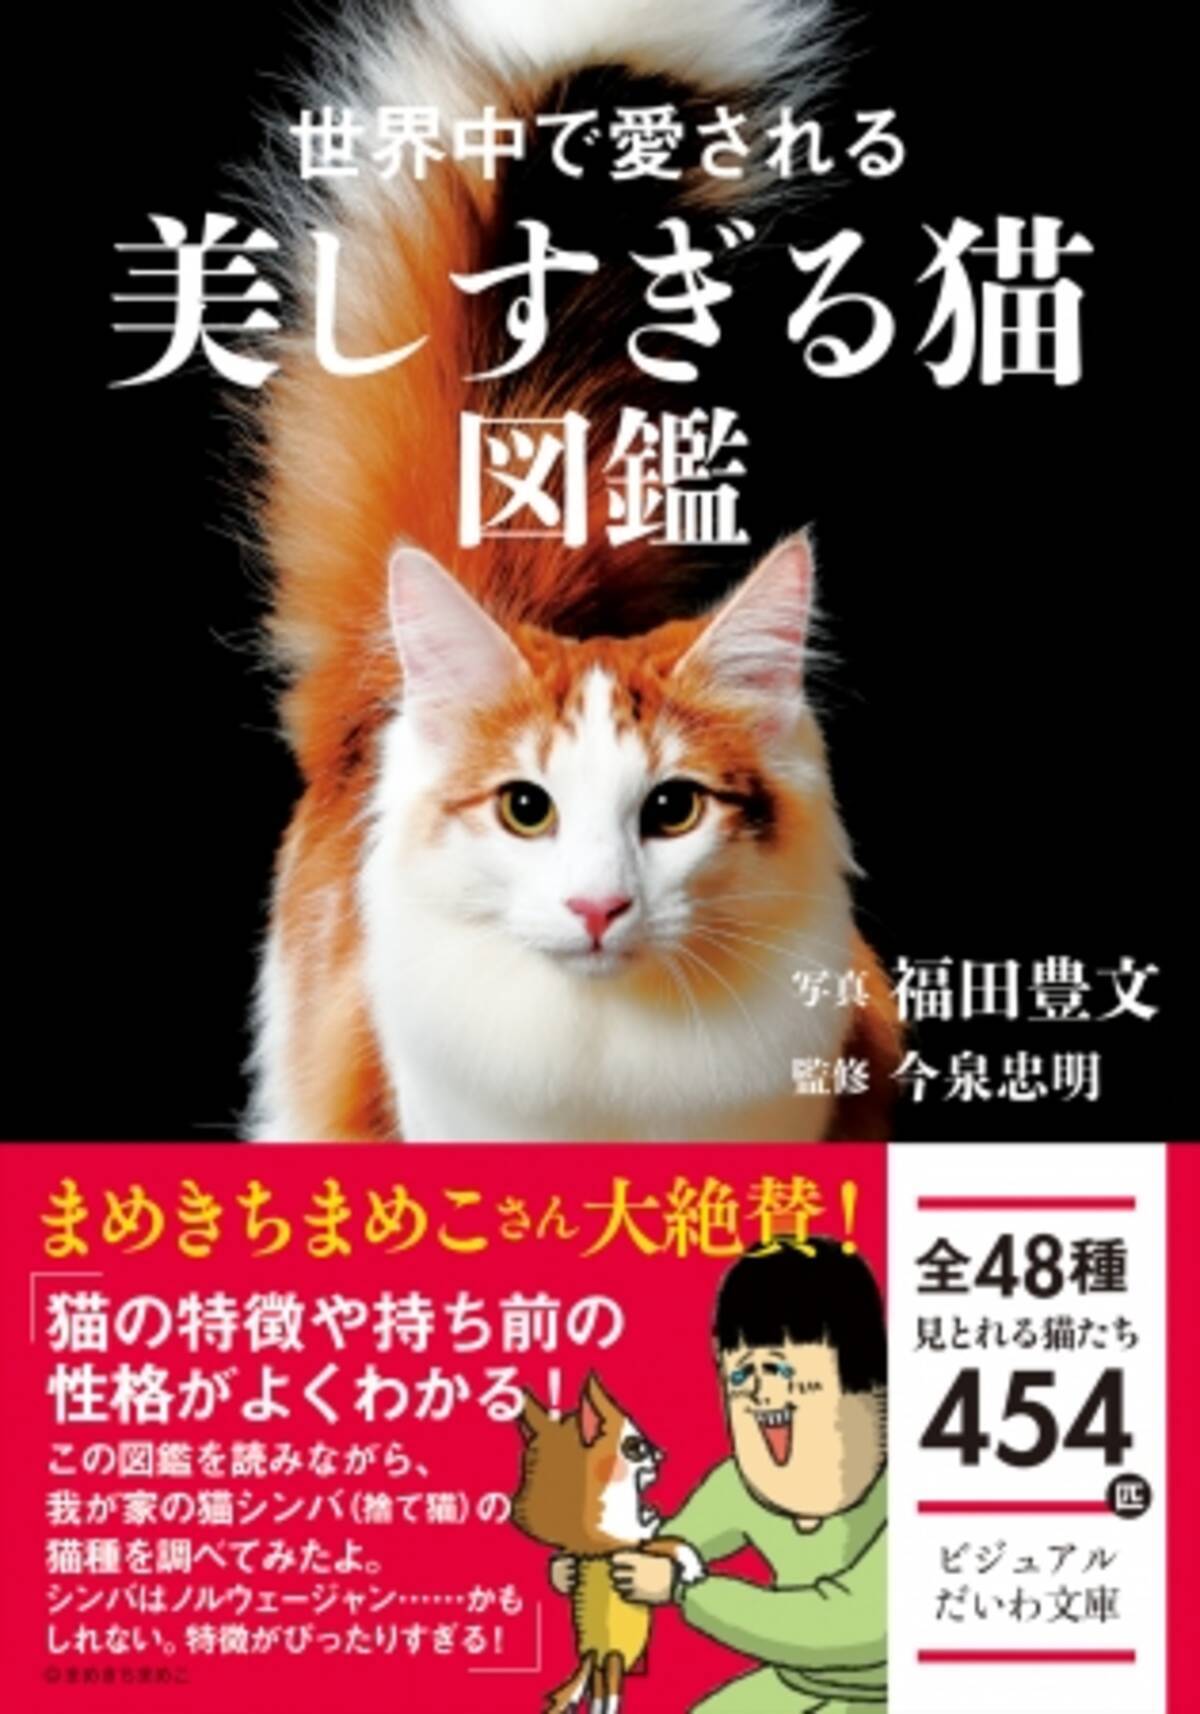 こまちとタビ まめきちまめこさんも絶賛 ポケットサイズ オールカラー 世界中で愛される美しすぎる猫図鑑 発売 年7月10日 エキサイトニュース